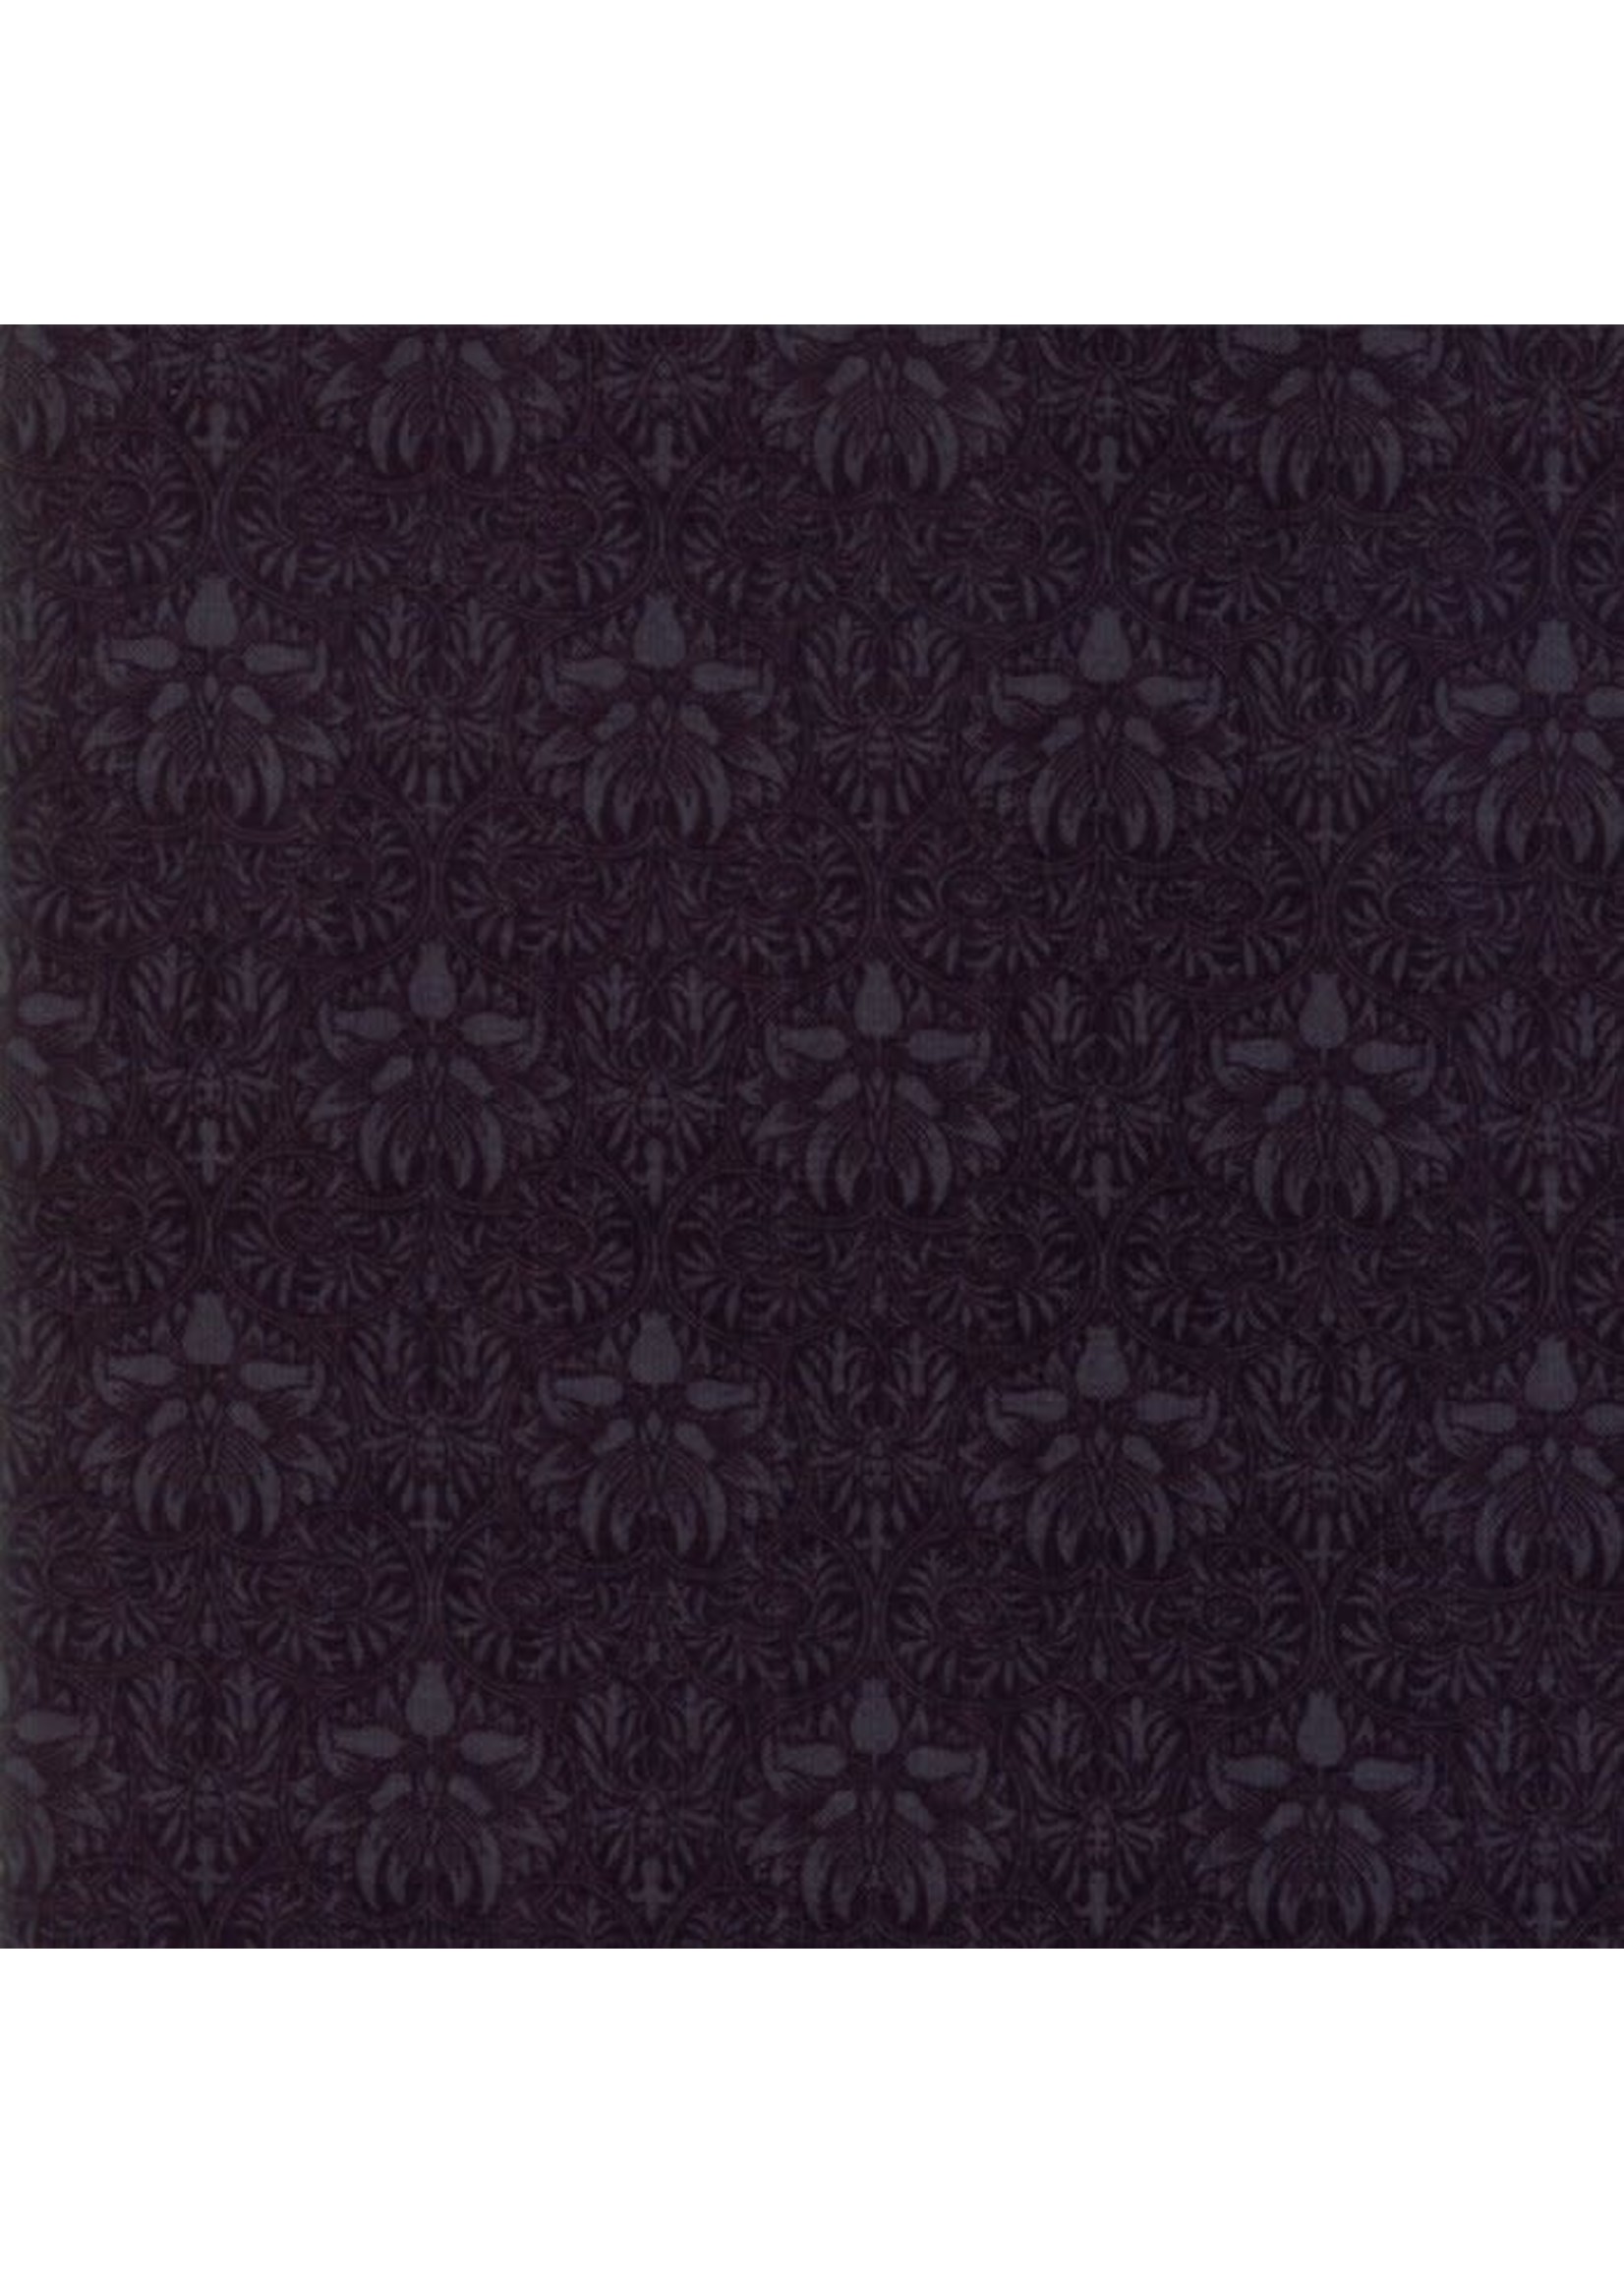 Moda Fabrics William Morris- Morris Garden - Black